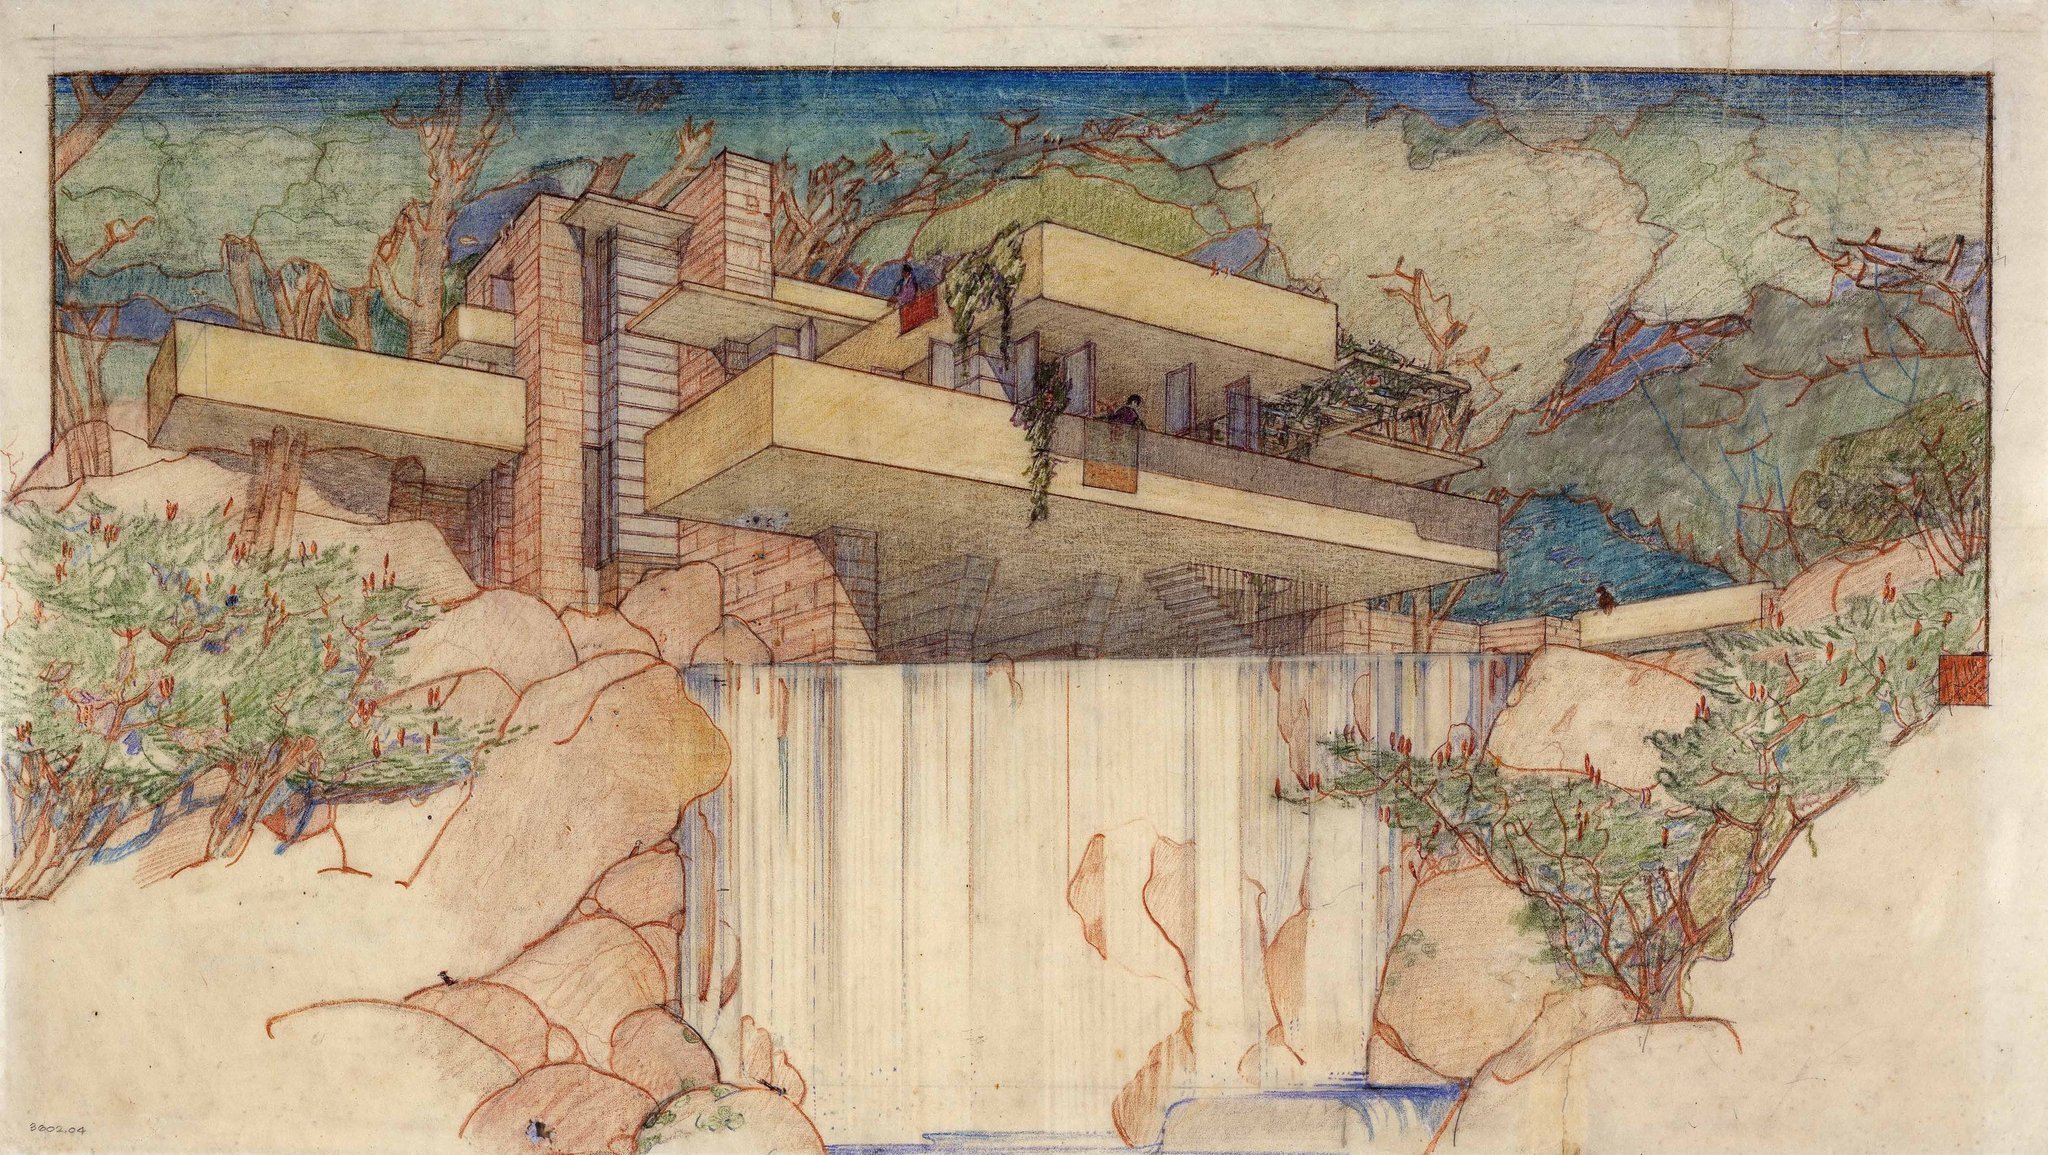 Fallingwater - Sketch by Frank Lloyd Wright